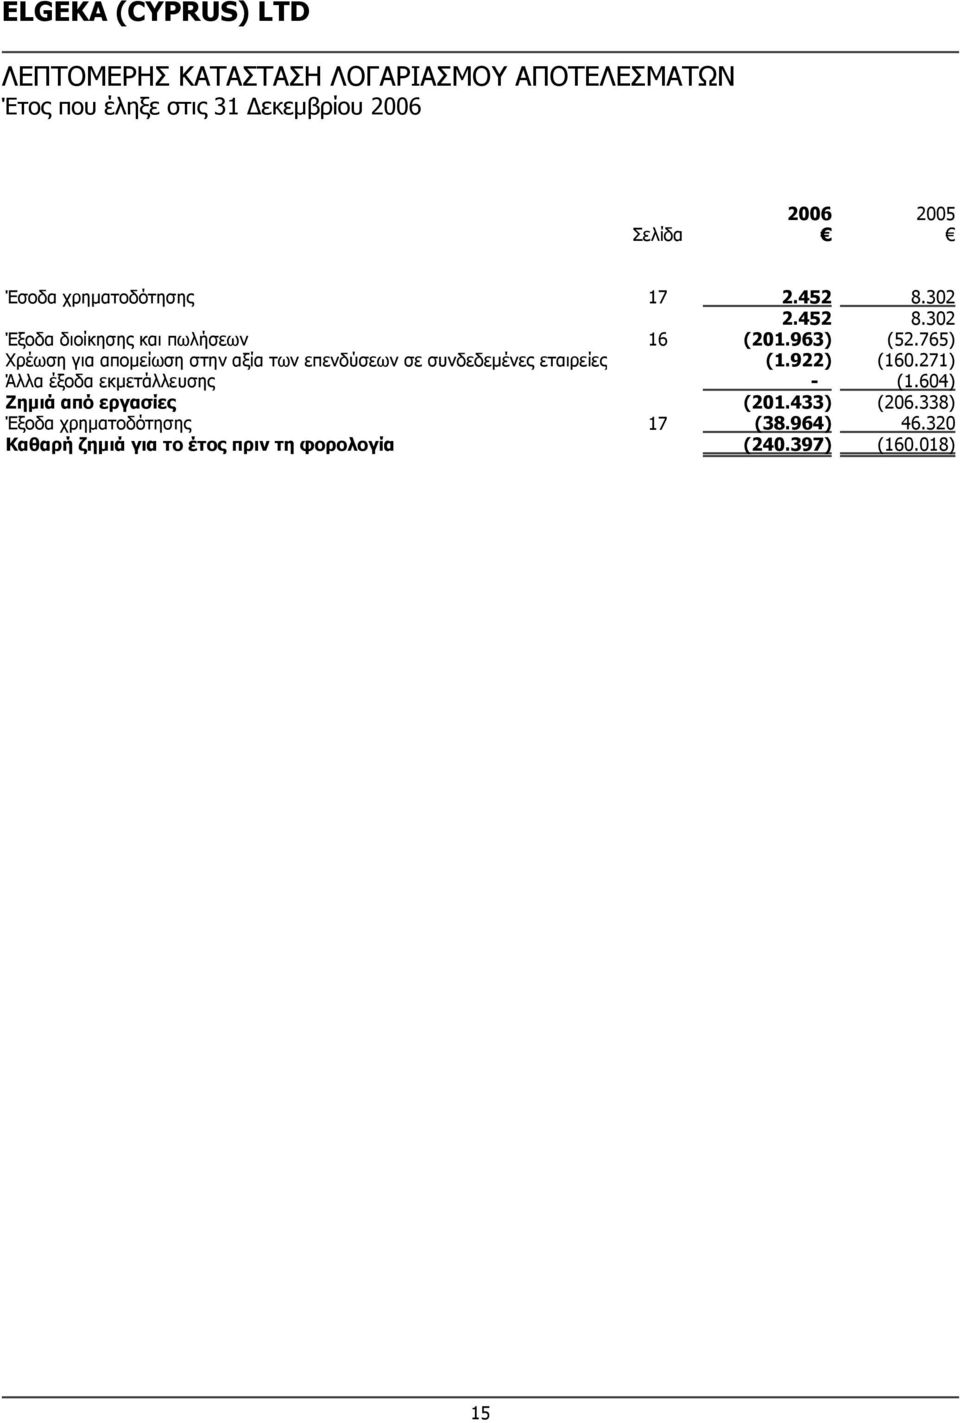 765) Χρέωση για απομείωση στην αξία των επενδύσεων σε συνδεδεμένες εταιρείες (1.922) (160.